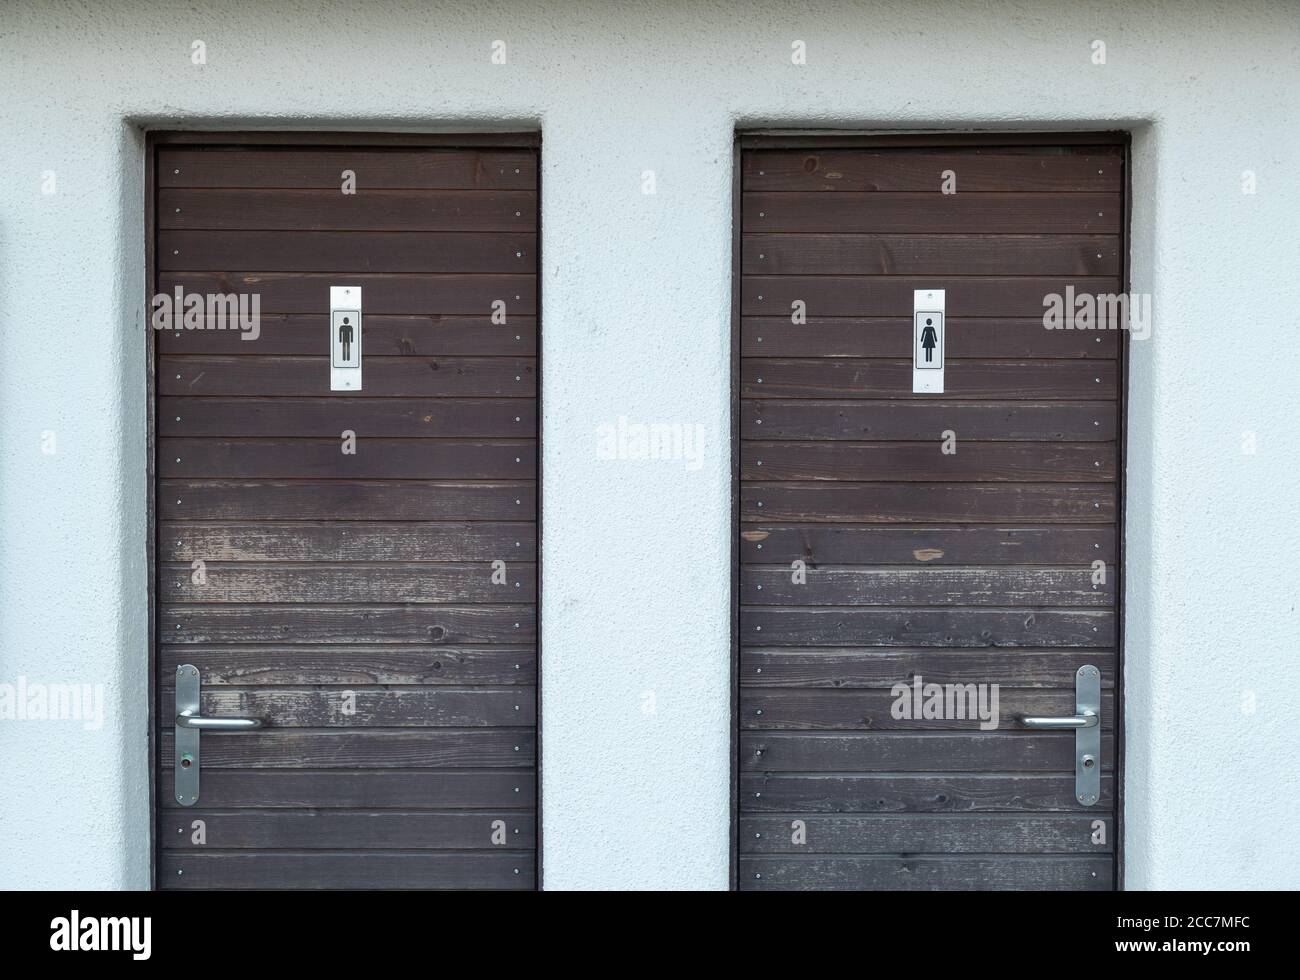 deux portes de toilettes en bois marron avec le symbole homme et femme sur la porte, un mur en plâtre blanc entoure les portes, un signal vert sur la poignée de porte Banque D'Images